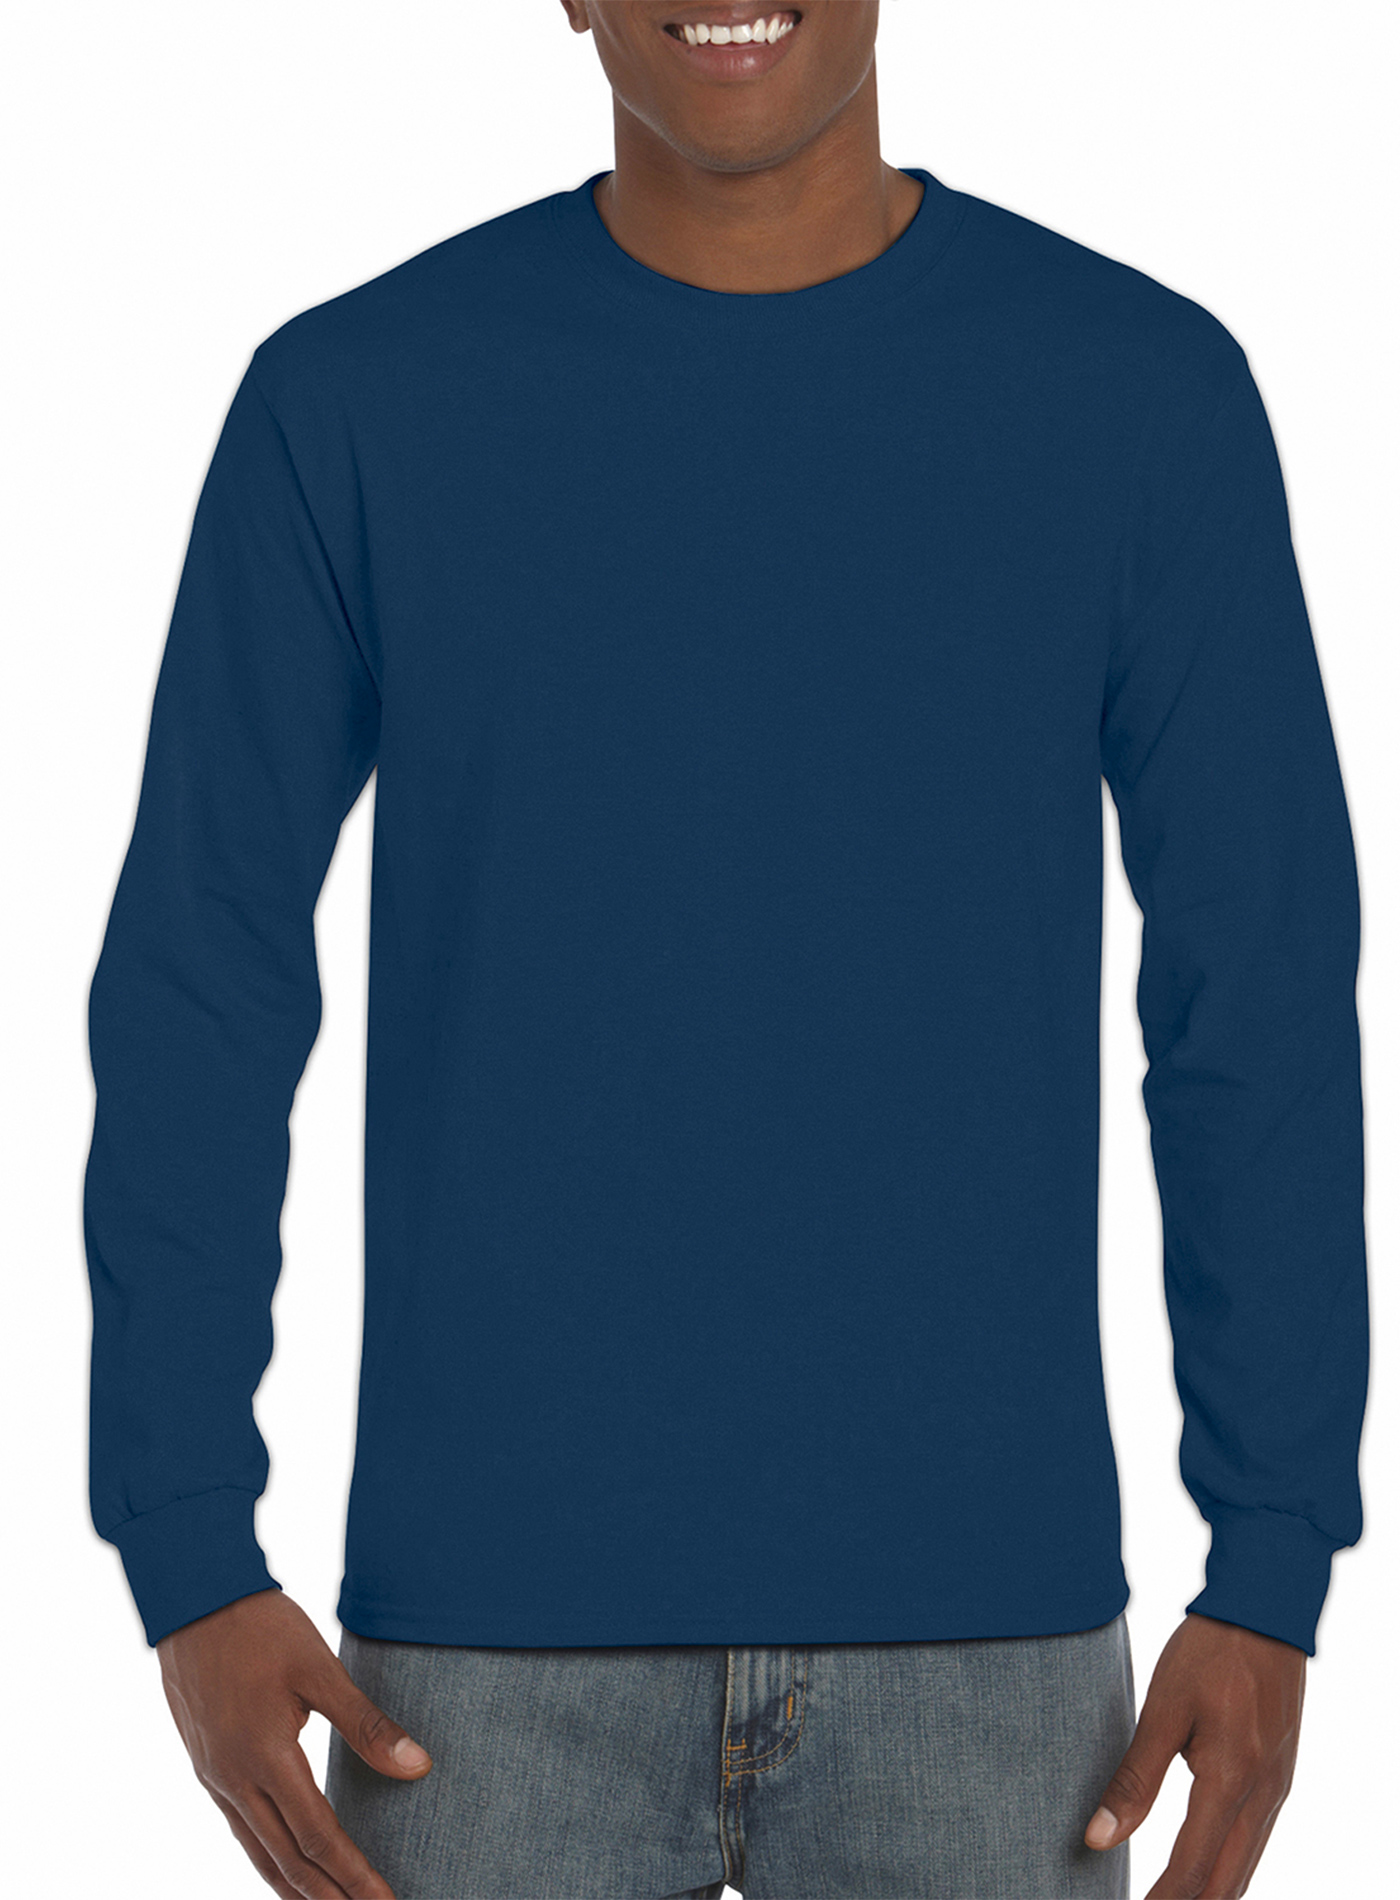 Pánské tričko s dlouhým rukávem Gildan Hammer - Temně modrá L